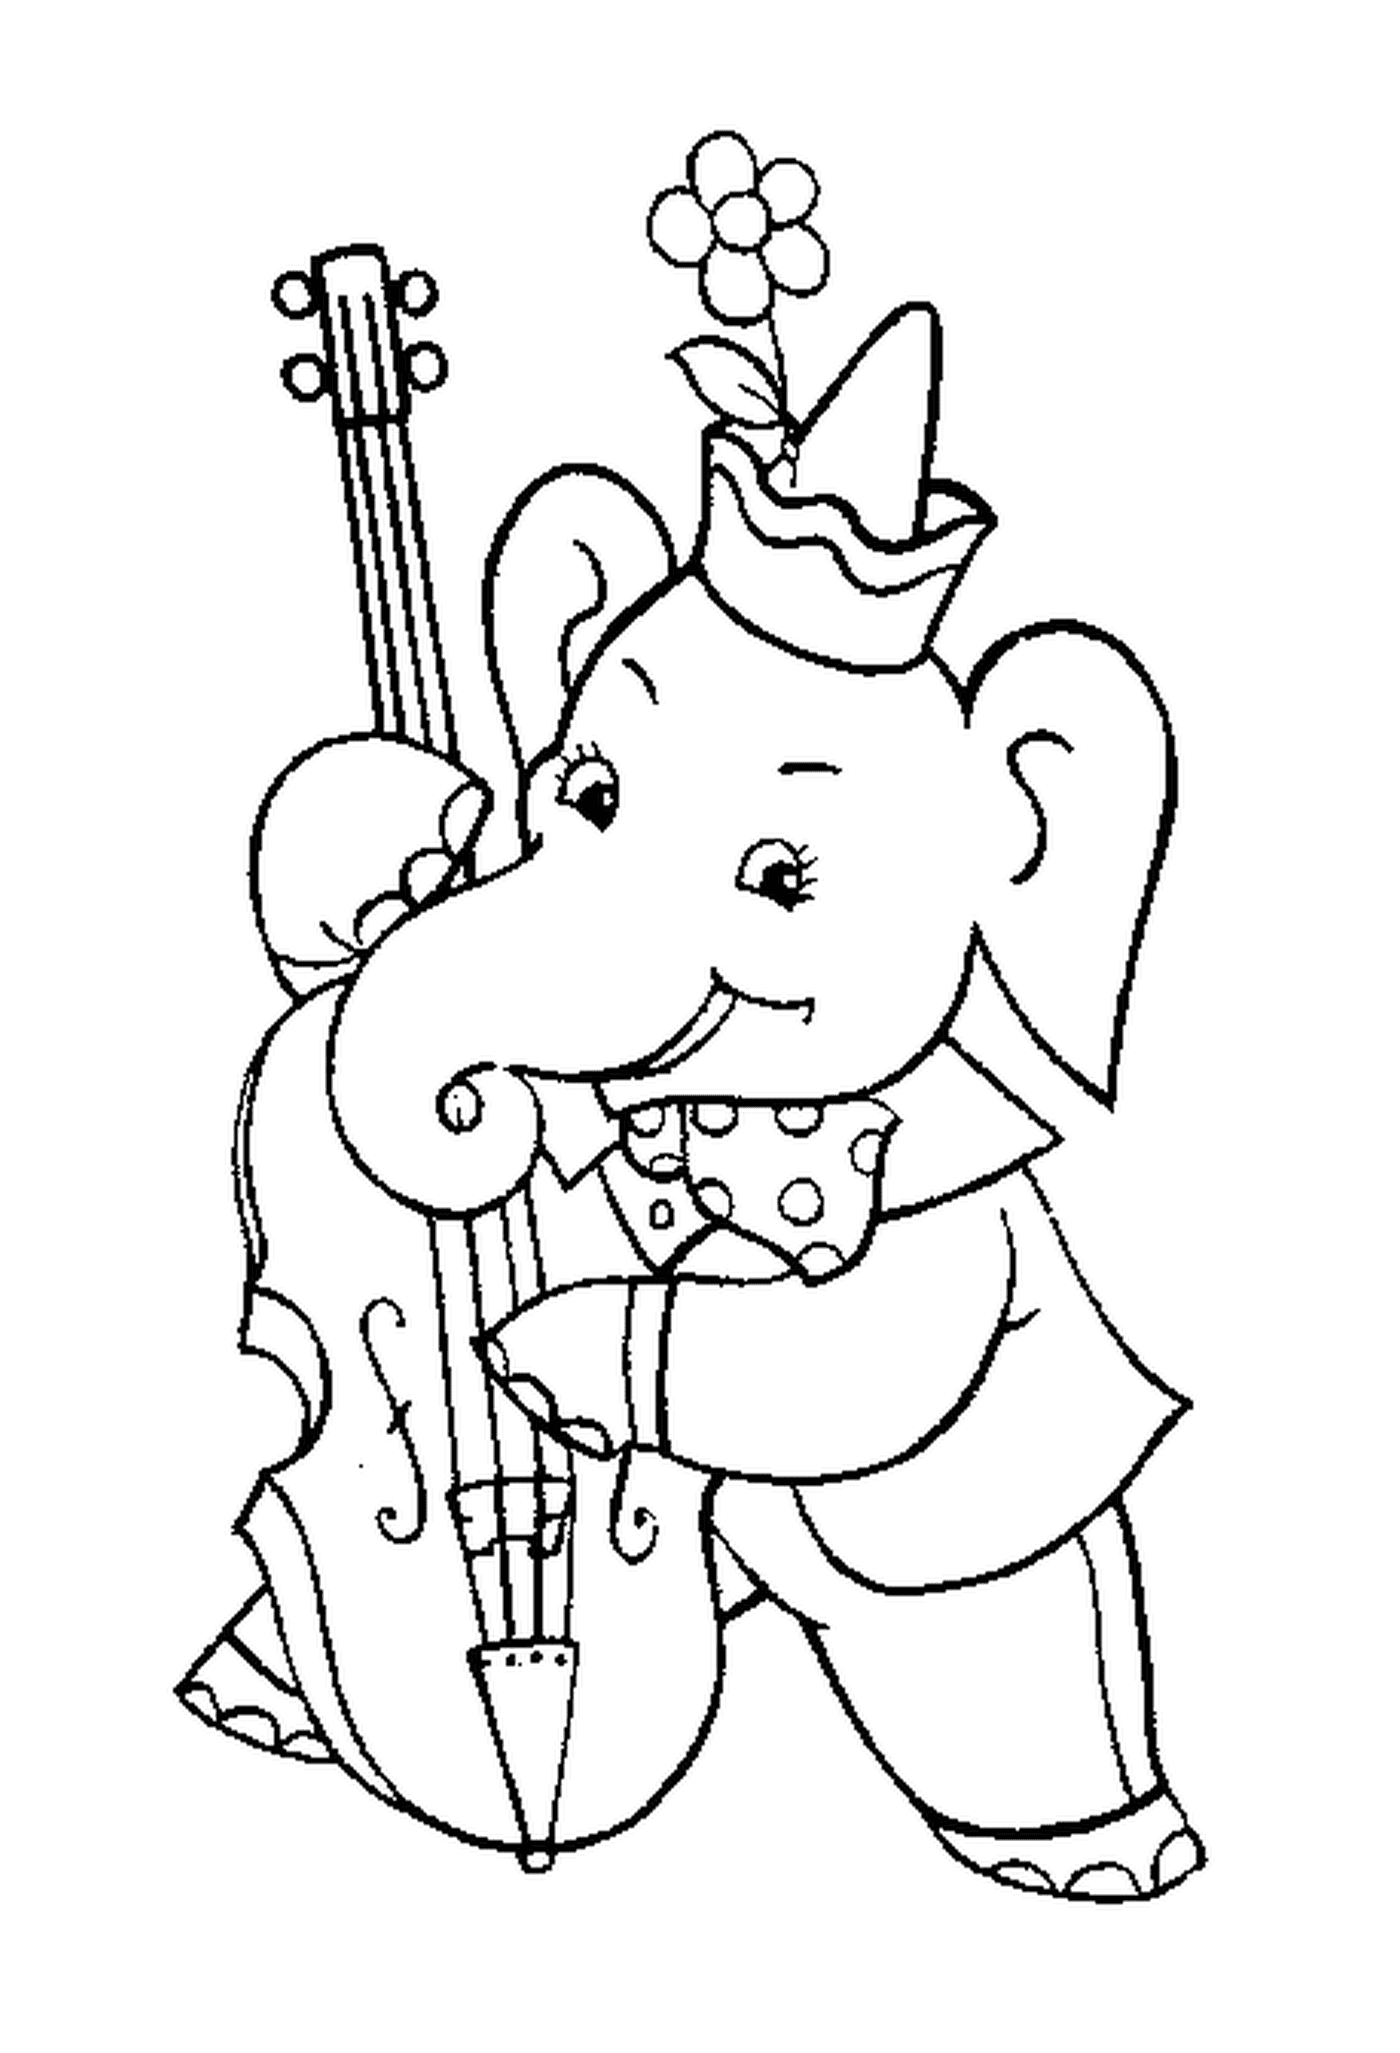  Un elefante tocando el violonchelo 